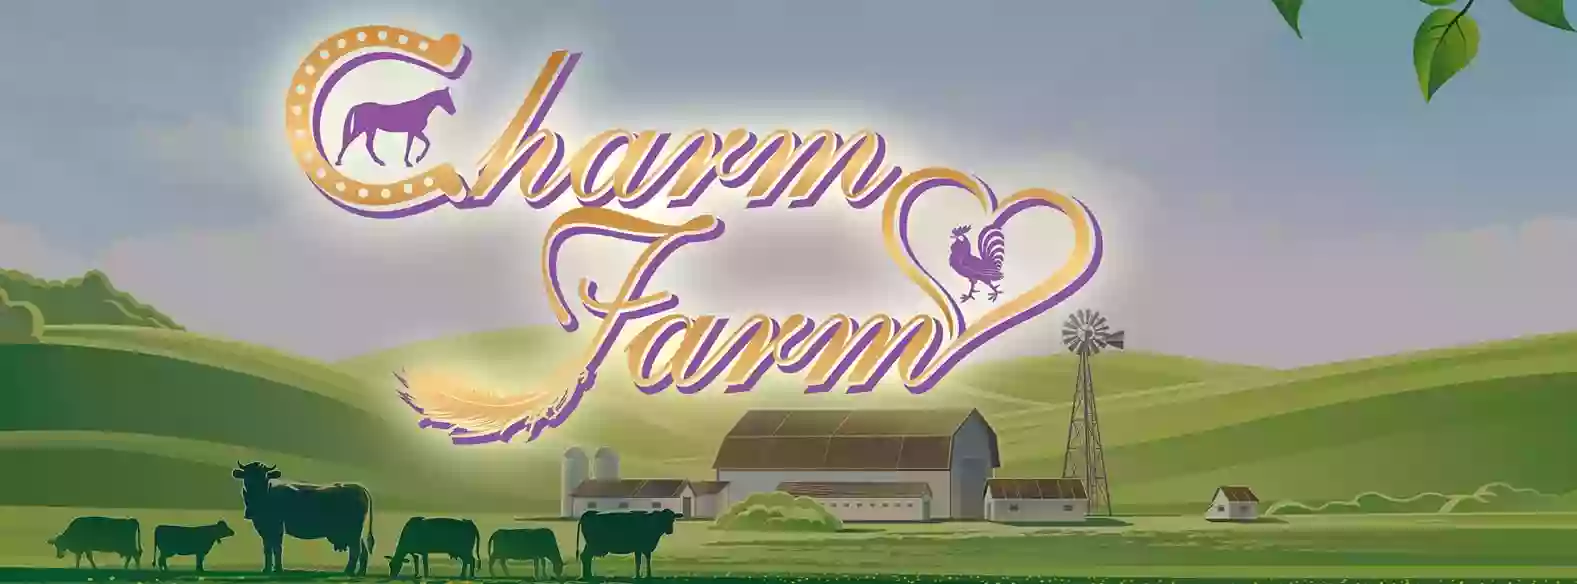 The Charm Farm